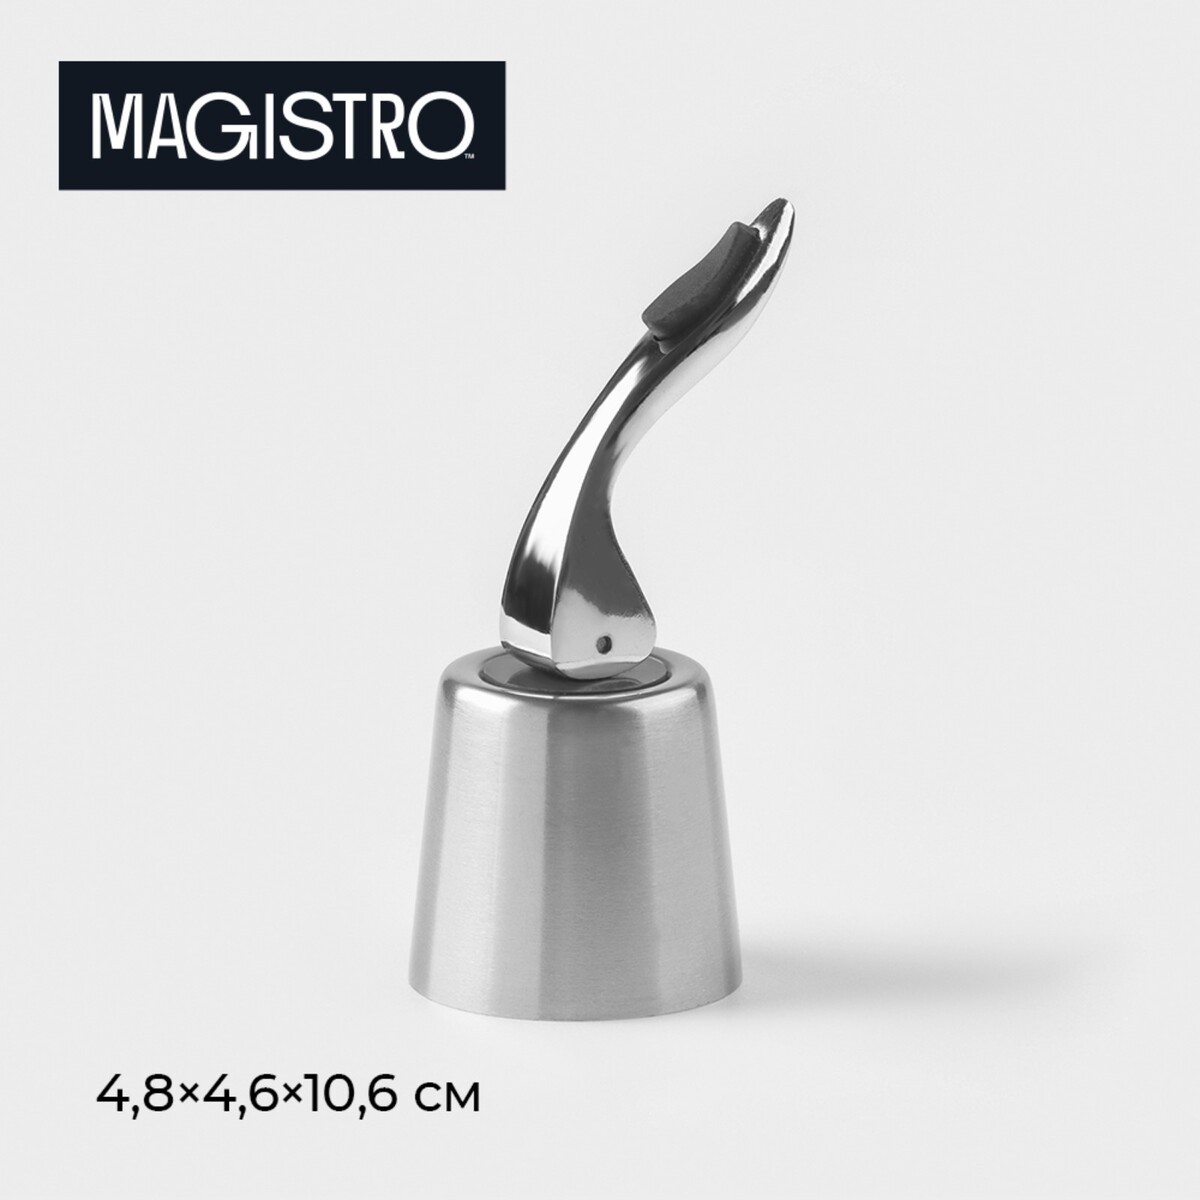 Пробка для вина magistro magnetto, универсальная пробка для вина формовая с эпоксидом